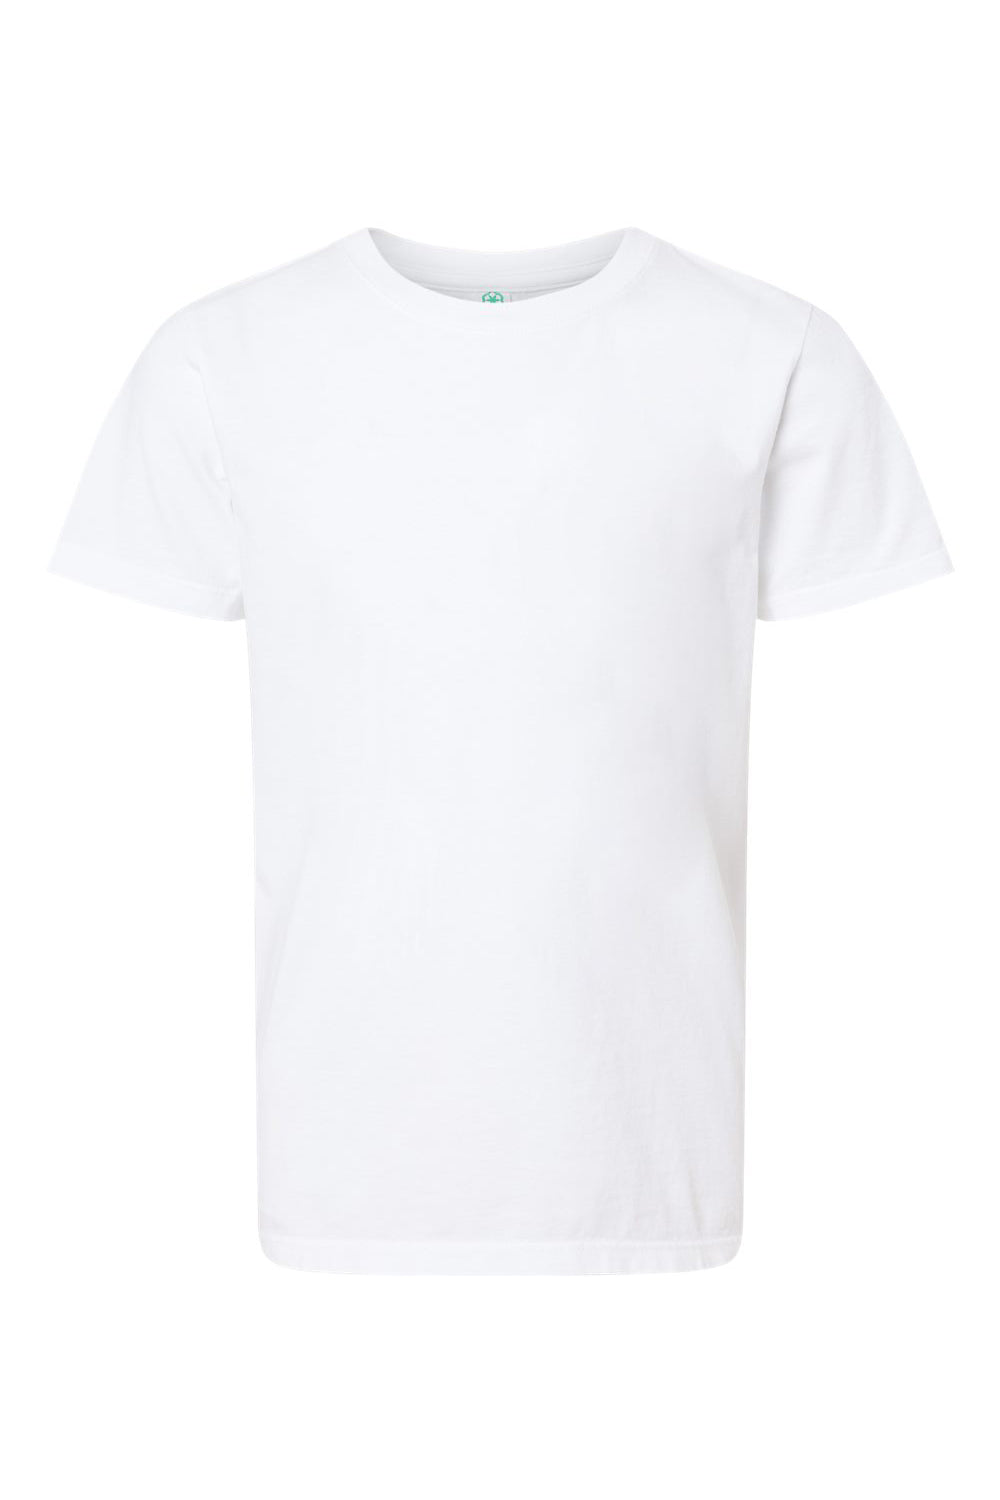 SoftShirts 402 Youth Organic Short Sleeve Crewneck T-Shirt White Flat Front